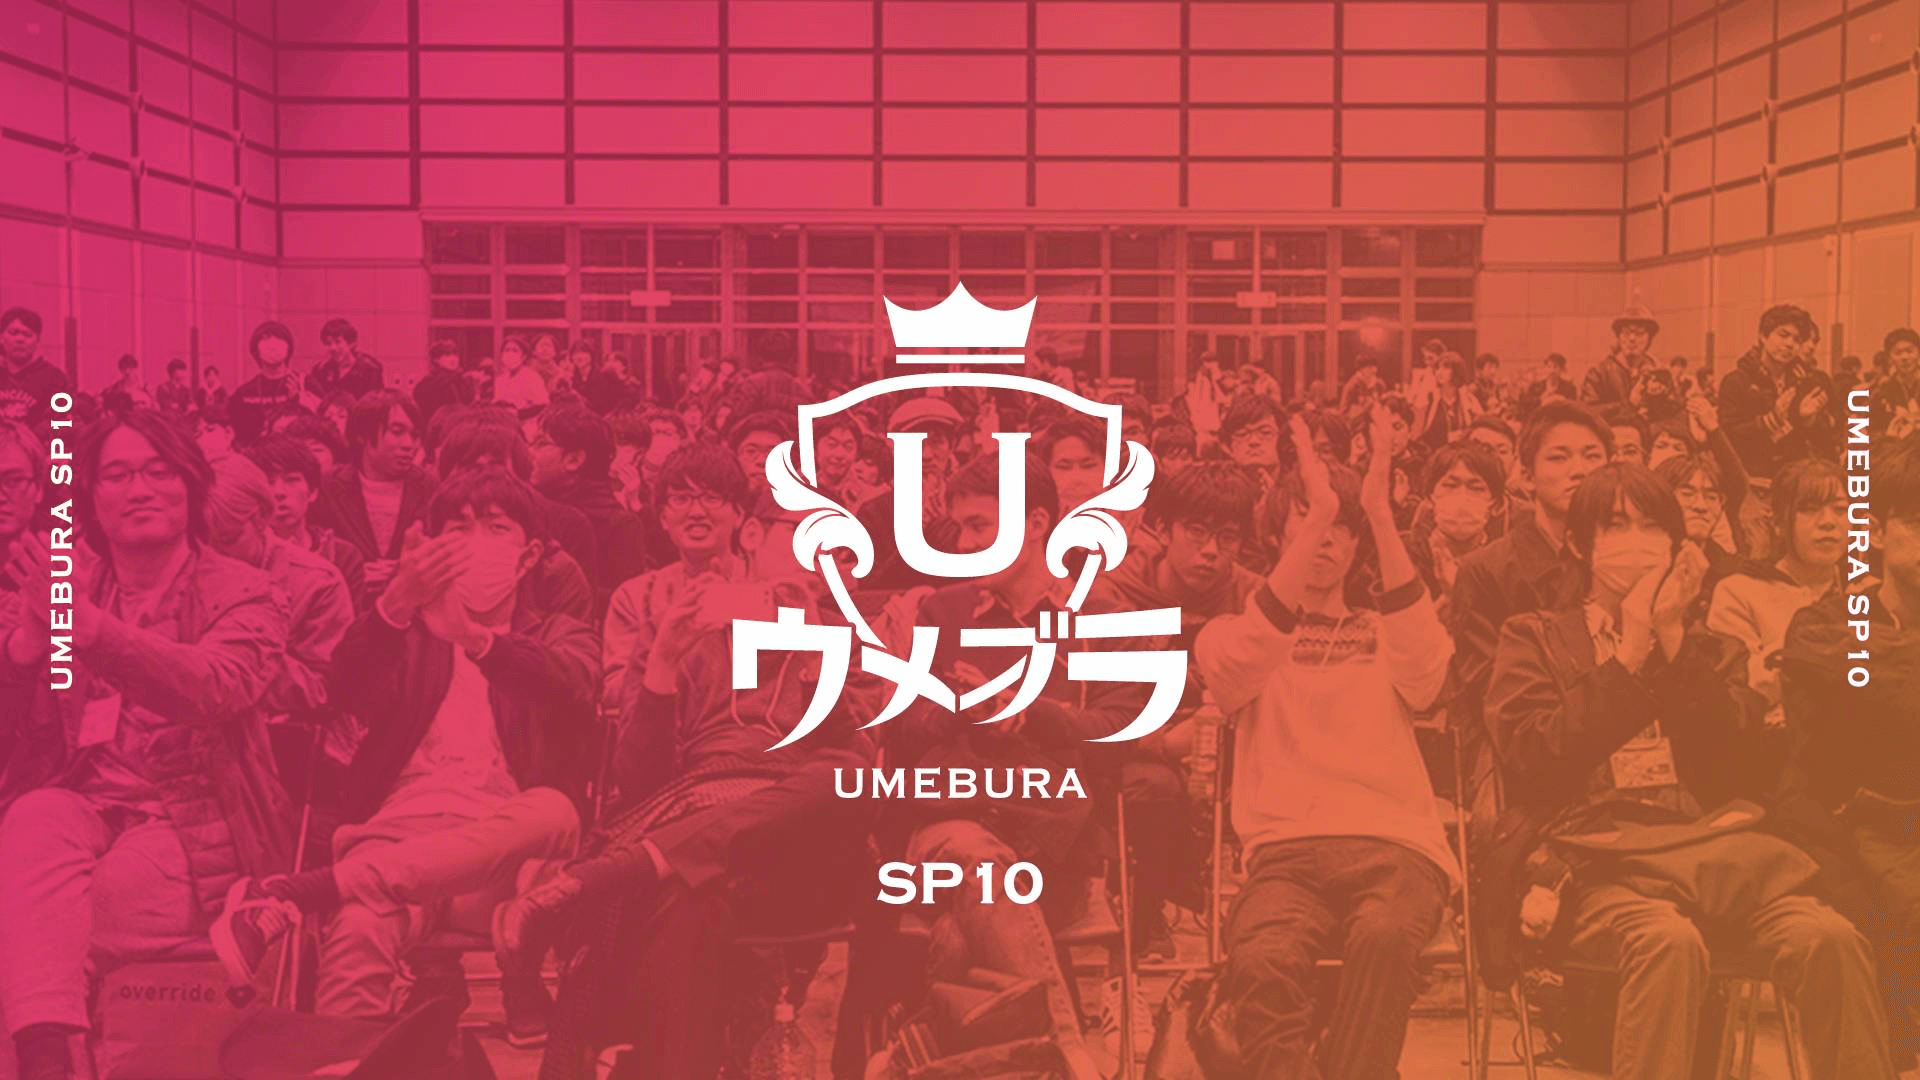 Umebura SP10 Results